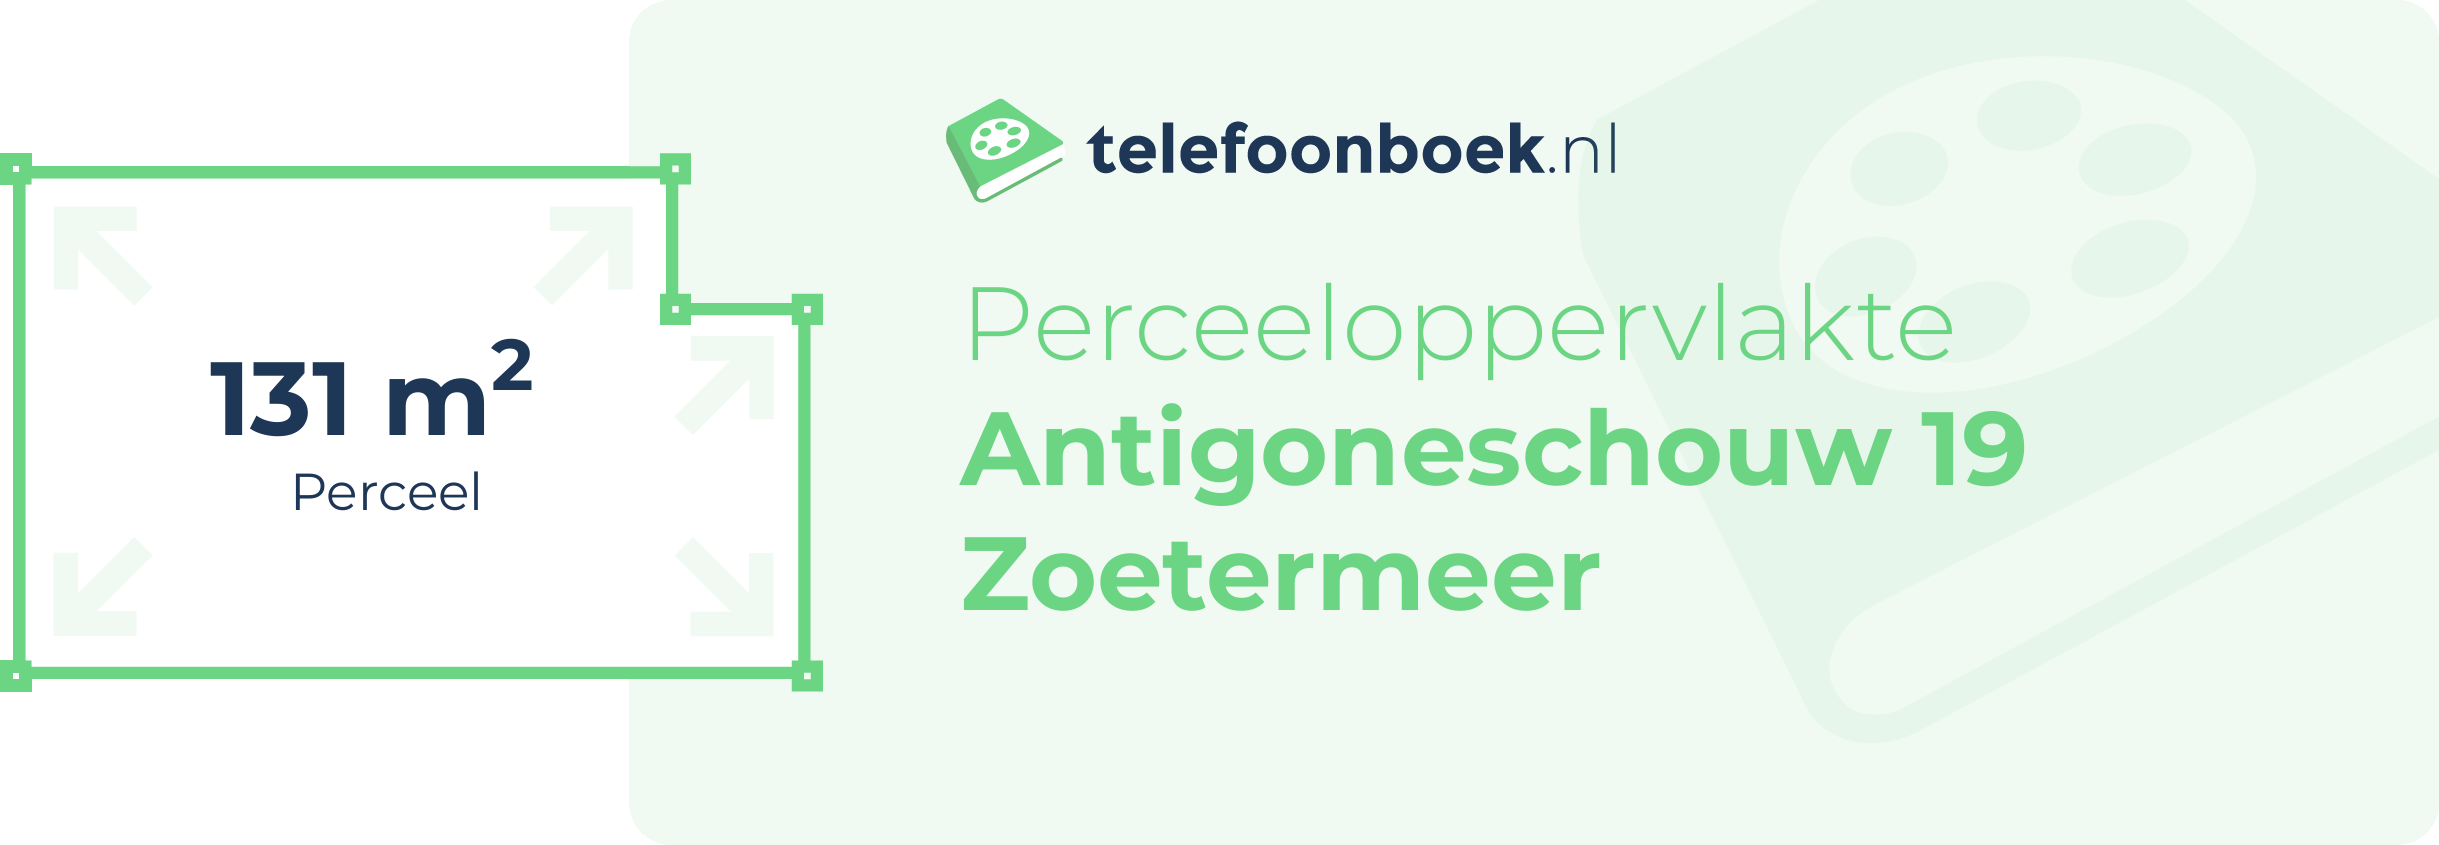 Perceeloppervlakte Antigoneschouw 19 Zoetermeer